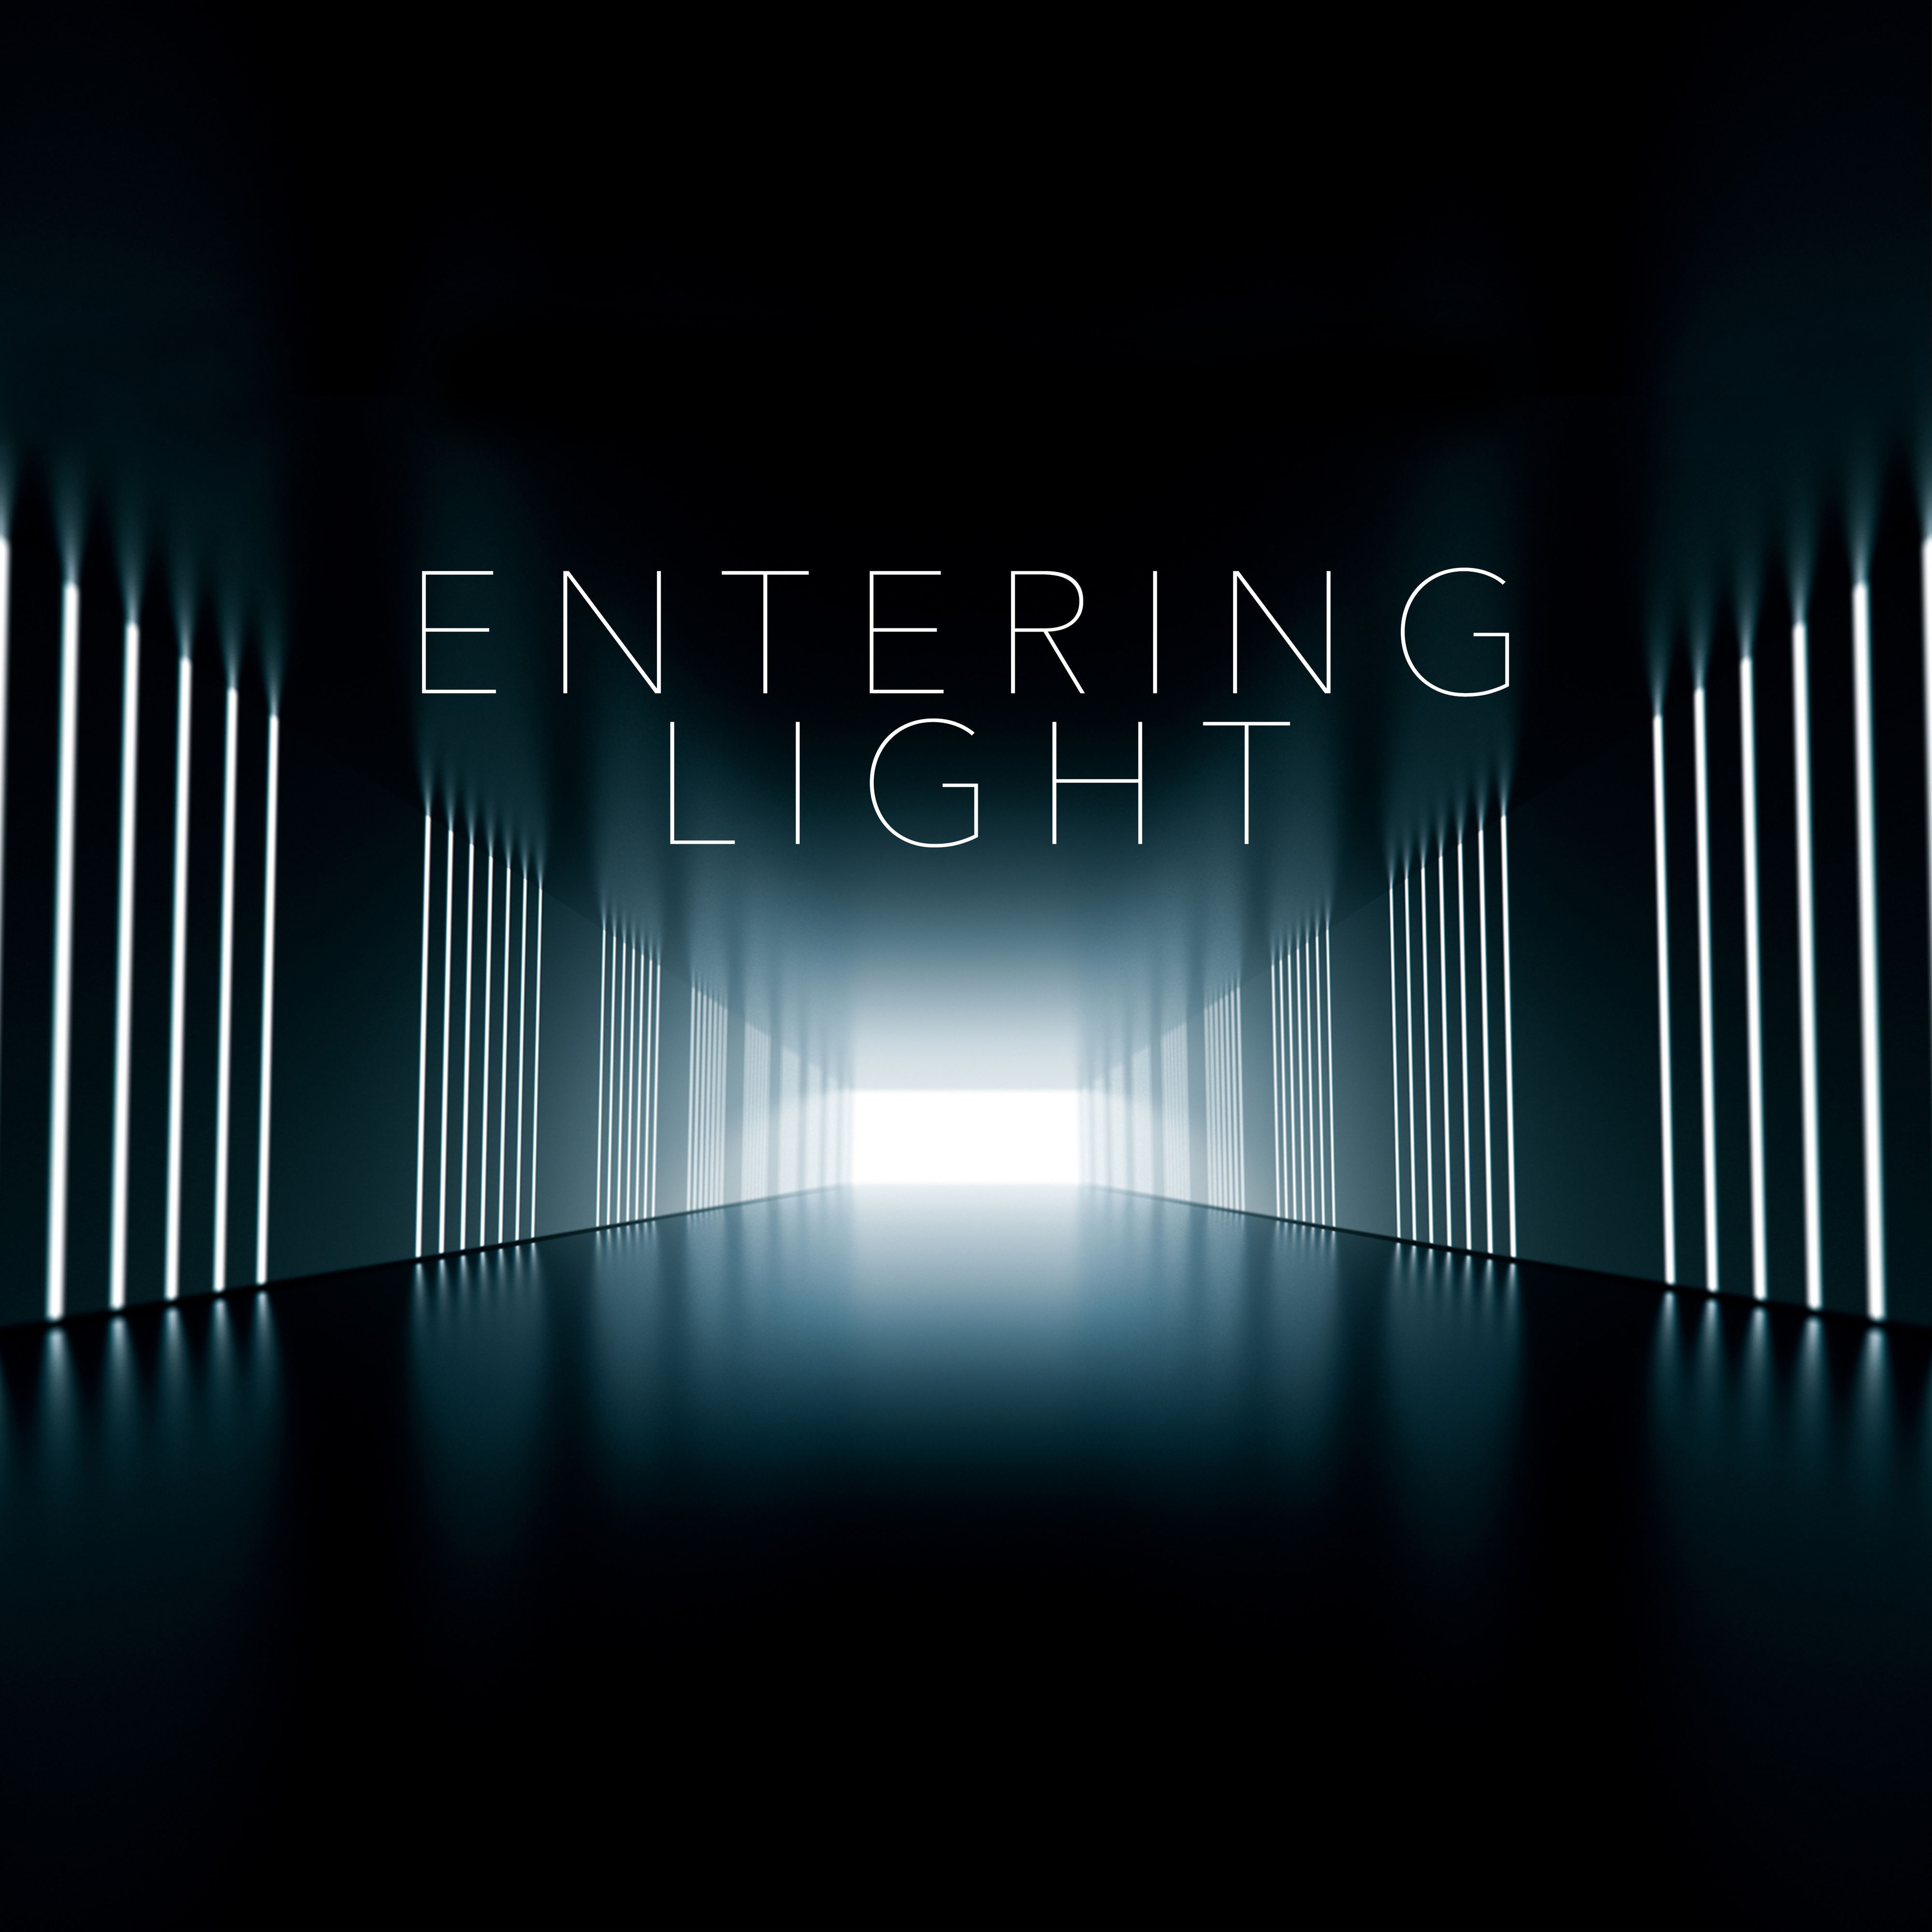 Enter light